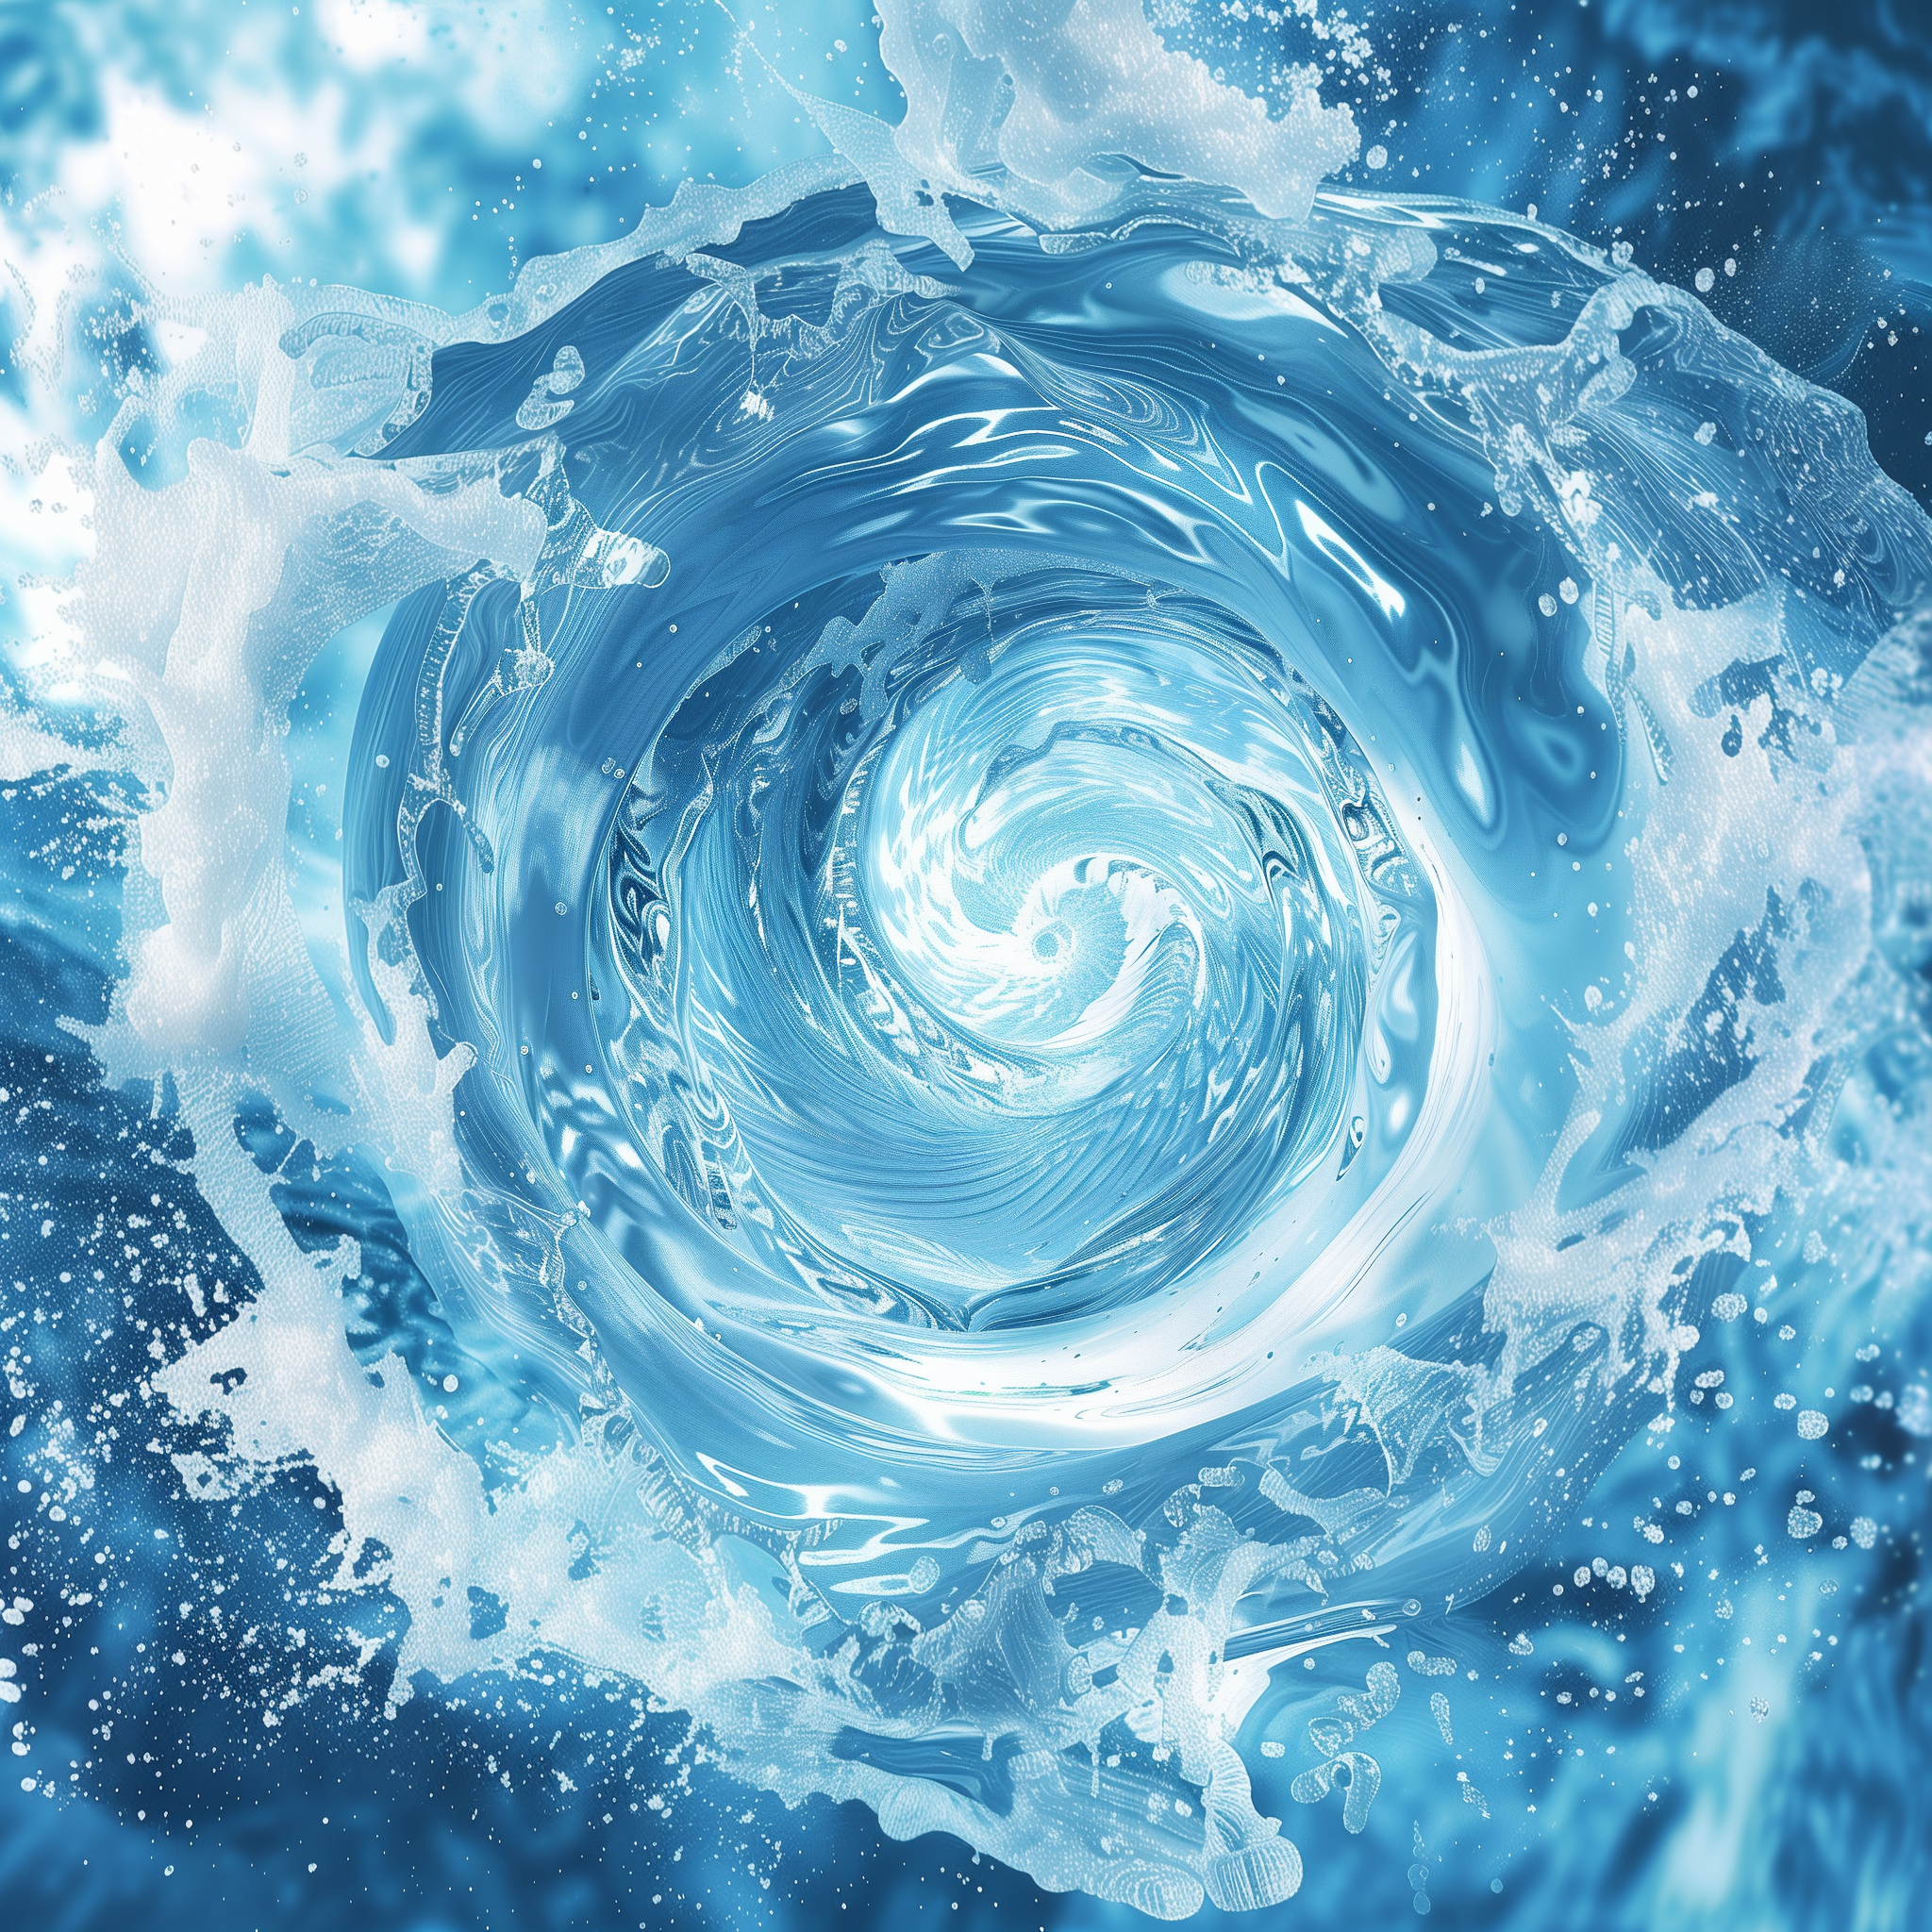 water spiral